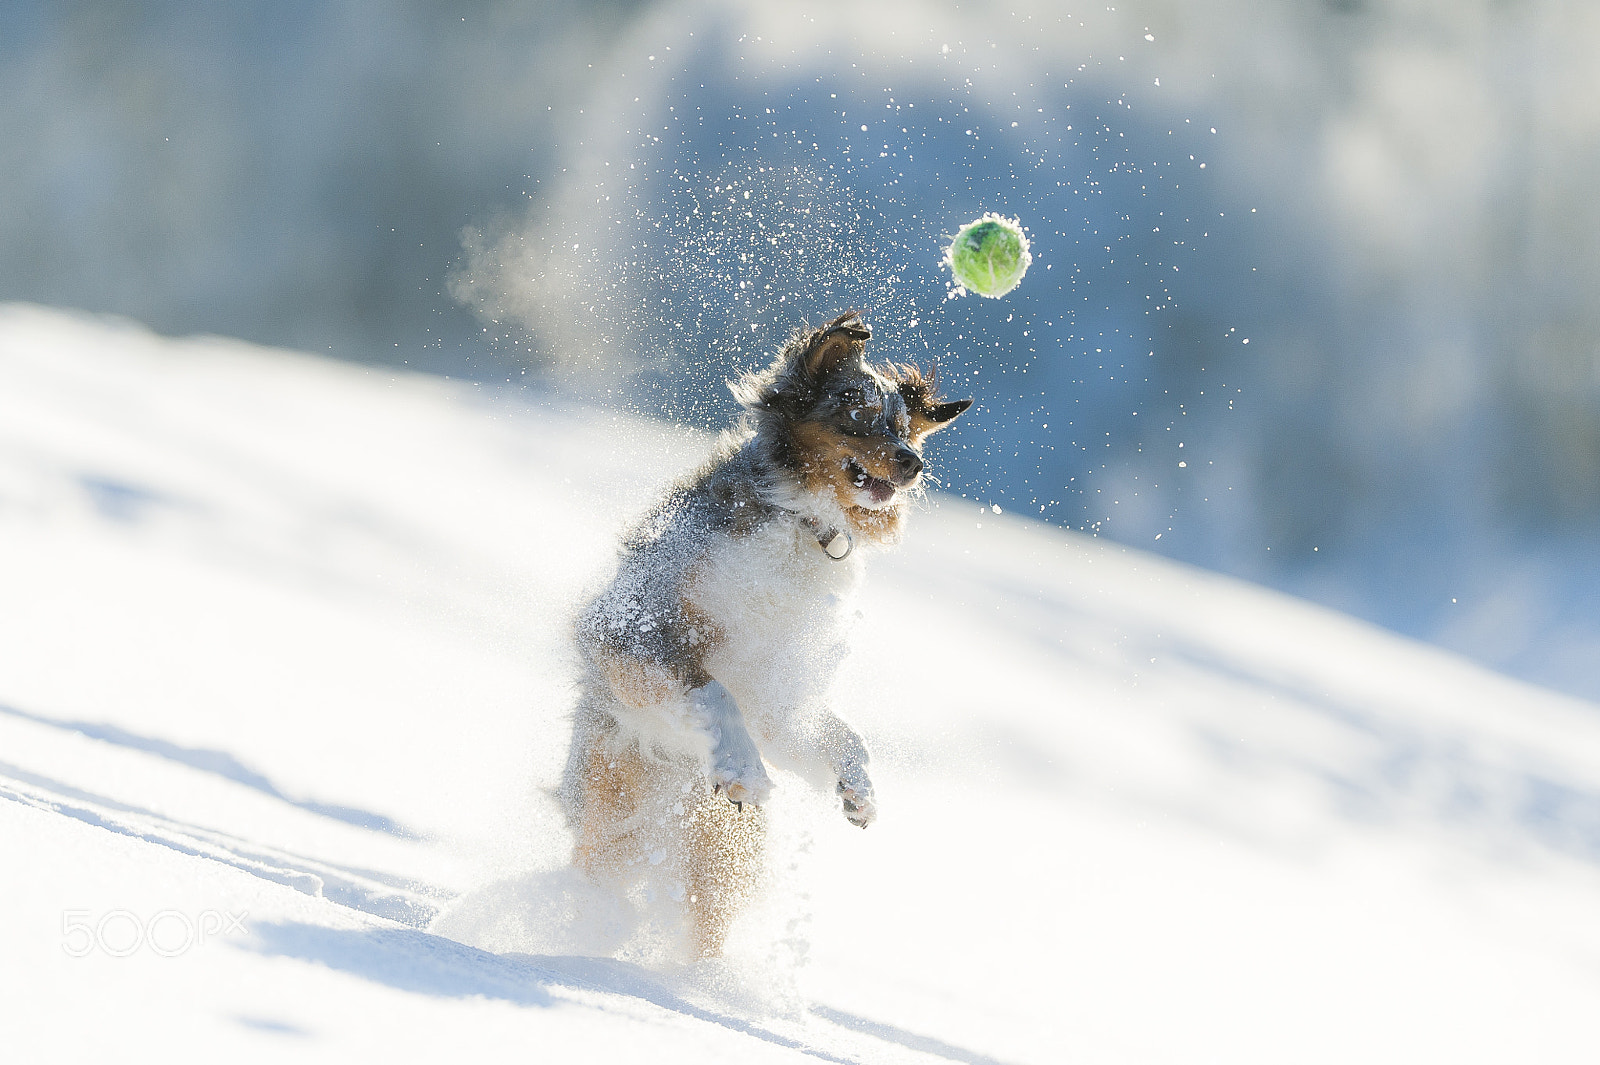 Nikon AF-S Nikkor 200mm F2G ED-IF VR sample photo. Dog in winterwonderland photography